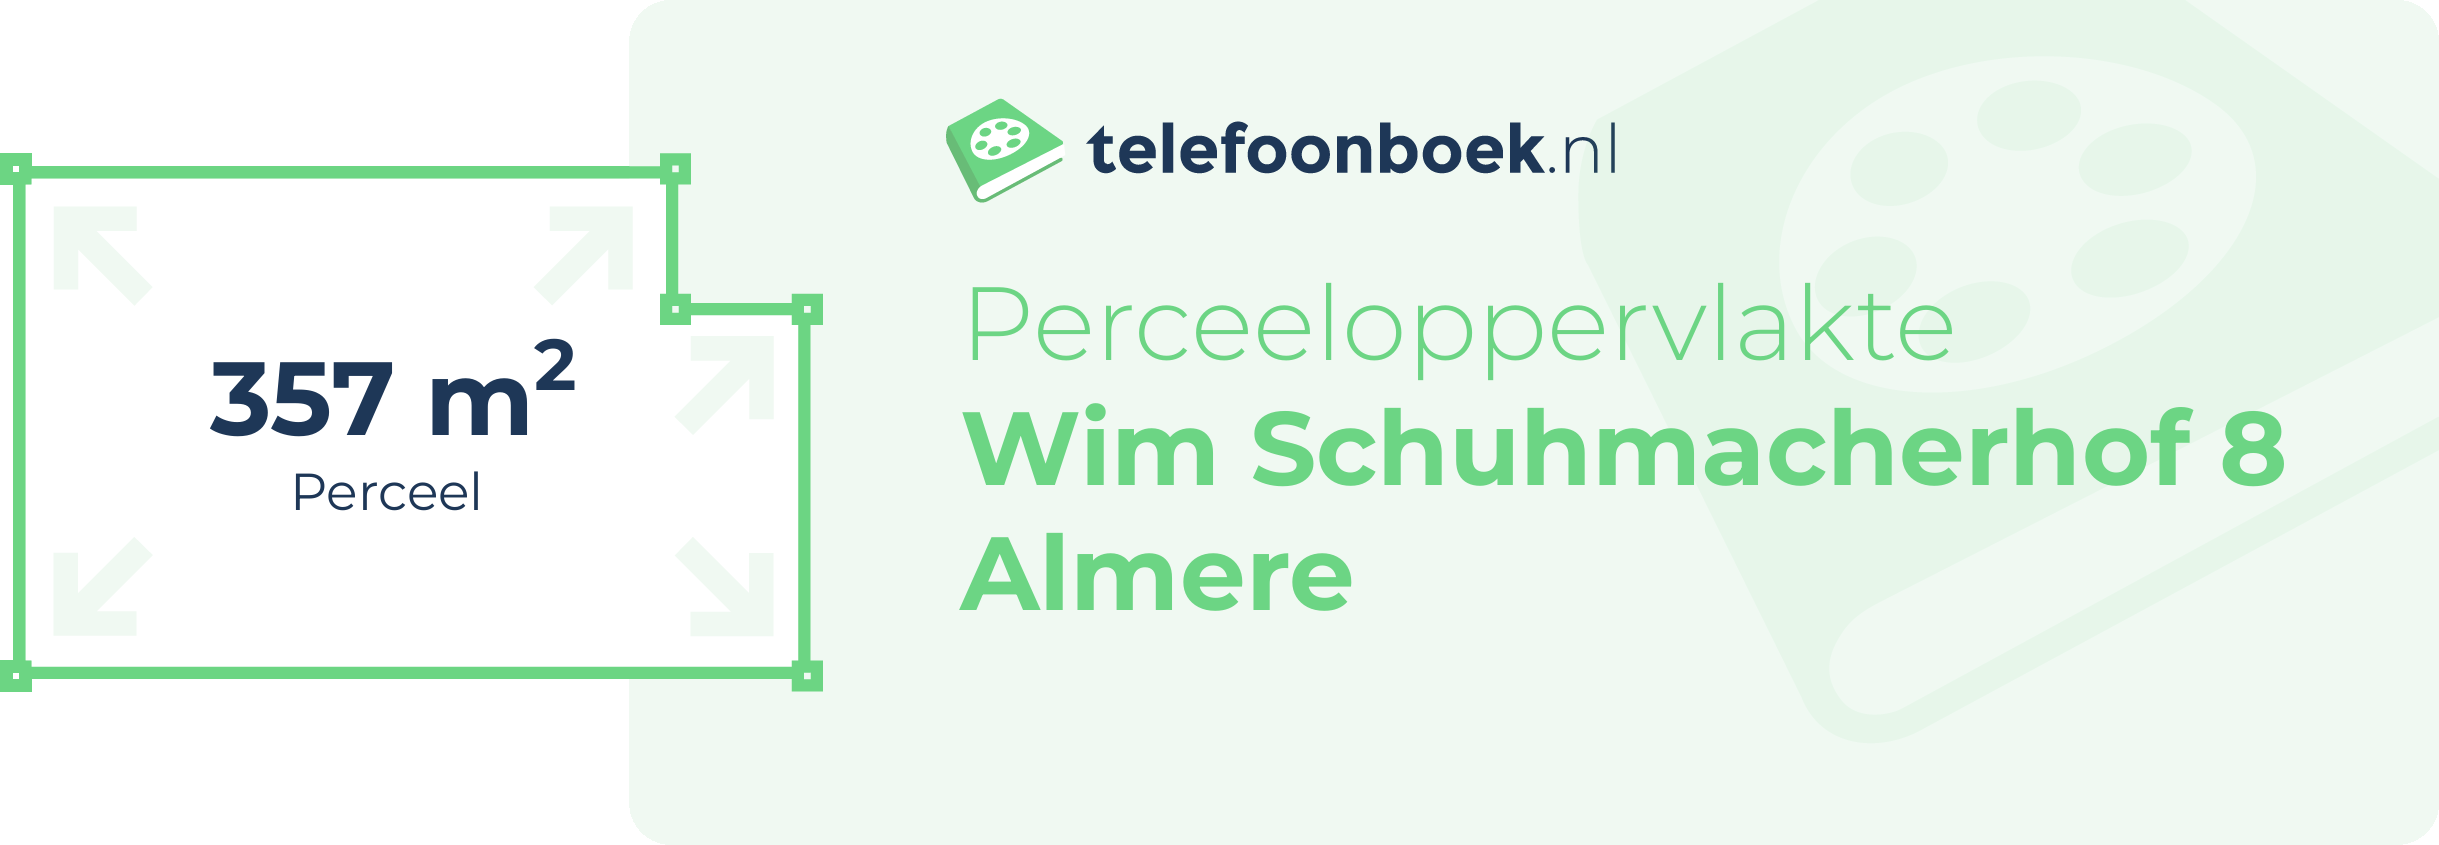 Perceeloppervlakte Wim Schuhmacherhof 8 Almere